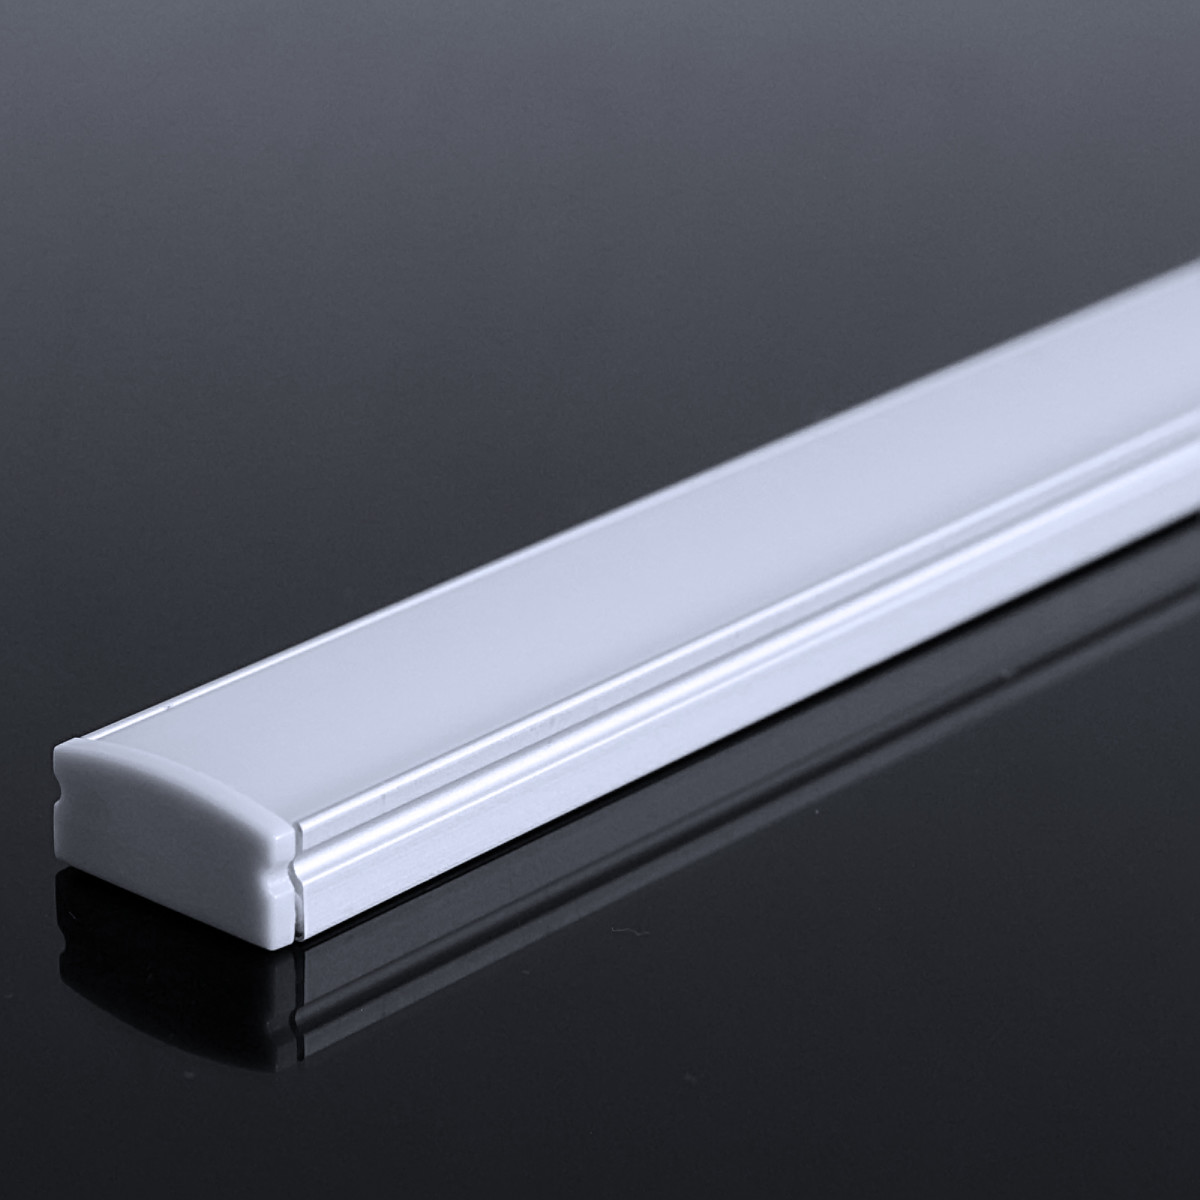 LED Flachprofil "Slim-Line" | Abdeckung diffus | Zuschnitt auf 109cm |